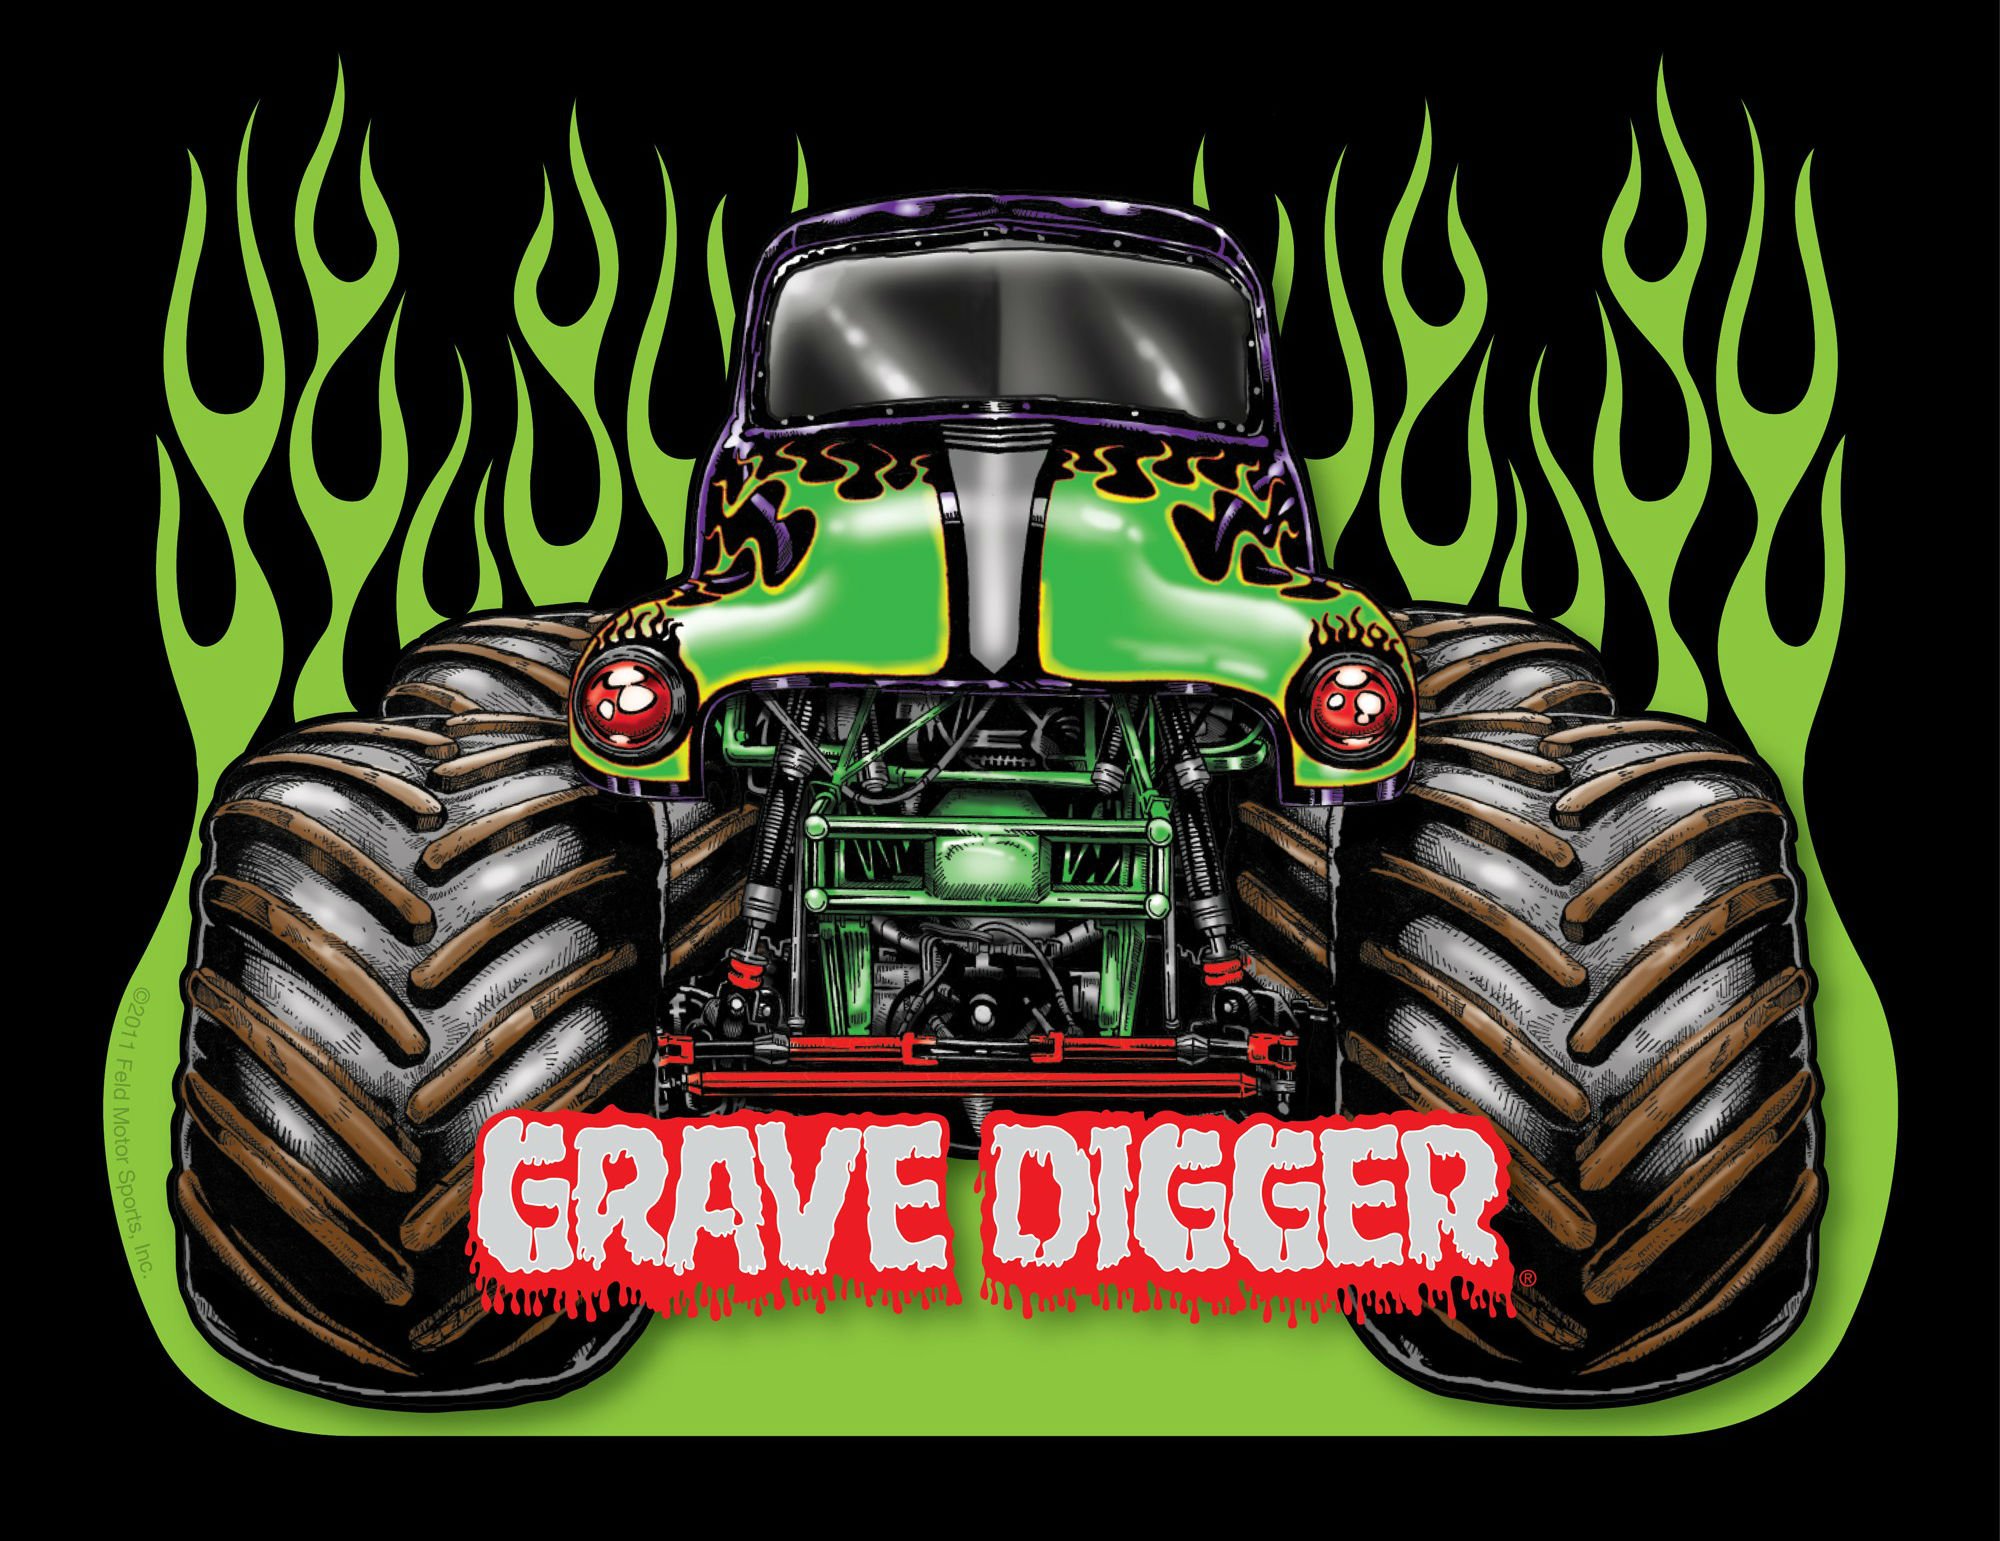 GRAVE DIGGER monster truck 4x4 race racing monster truck js 2000x1541. 